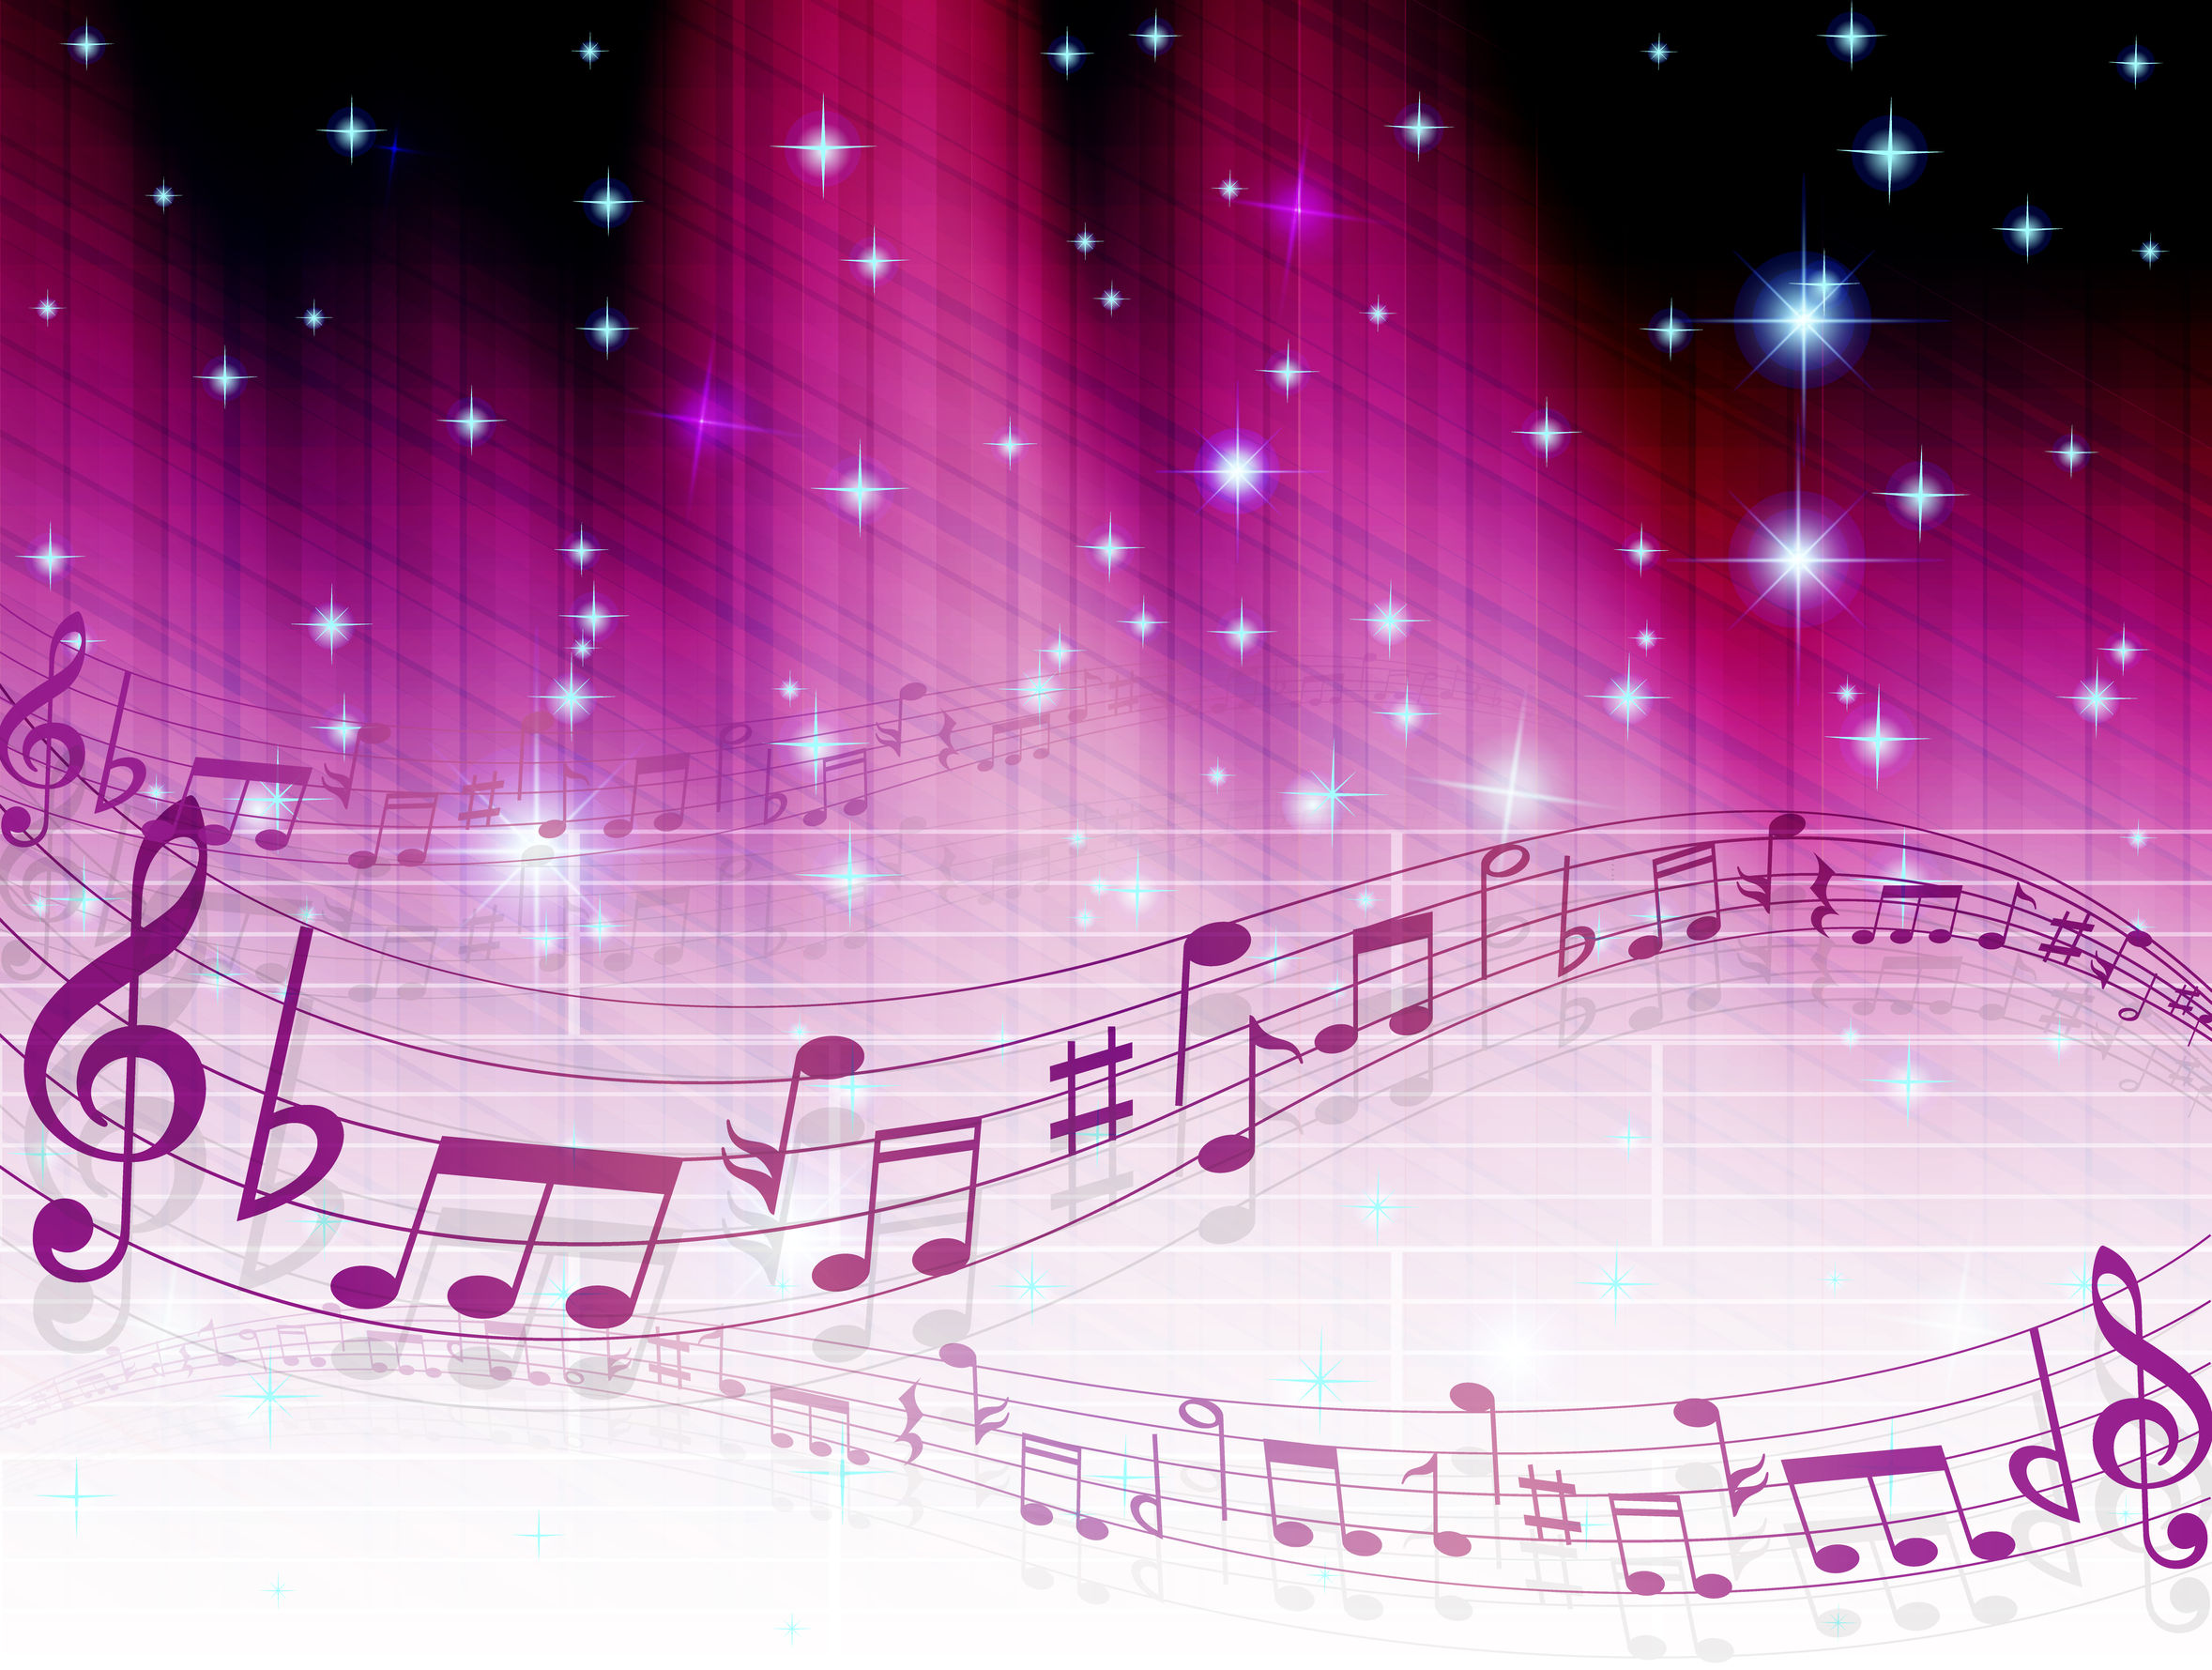 הלכות מעניינות - האם מותר לשיר בשבת שירים הקשורים לעצב? הרב אושרי אזולאי  